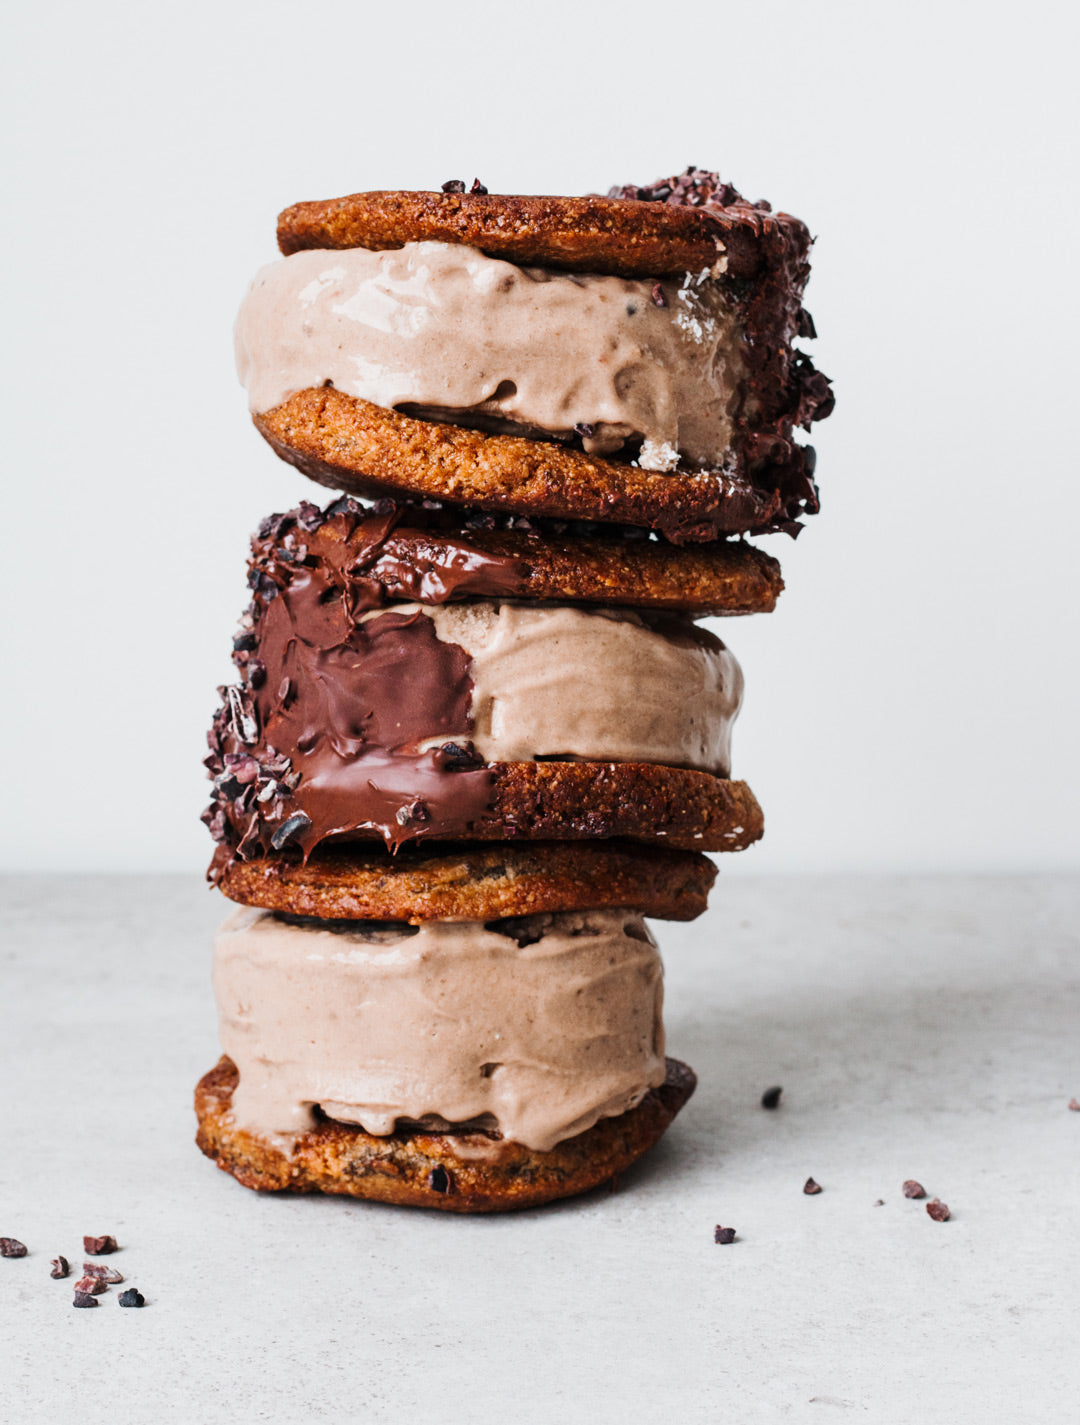 protein ice cream sandwich vegan gluten free recipe